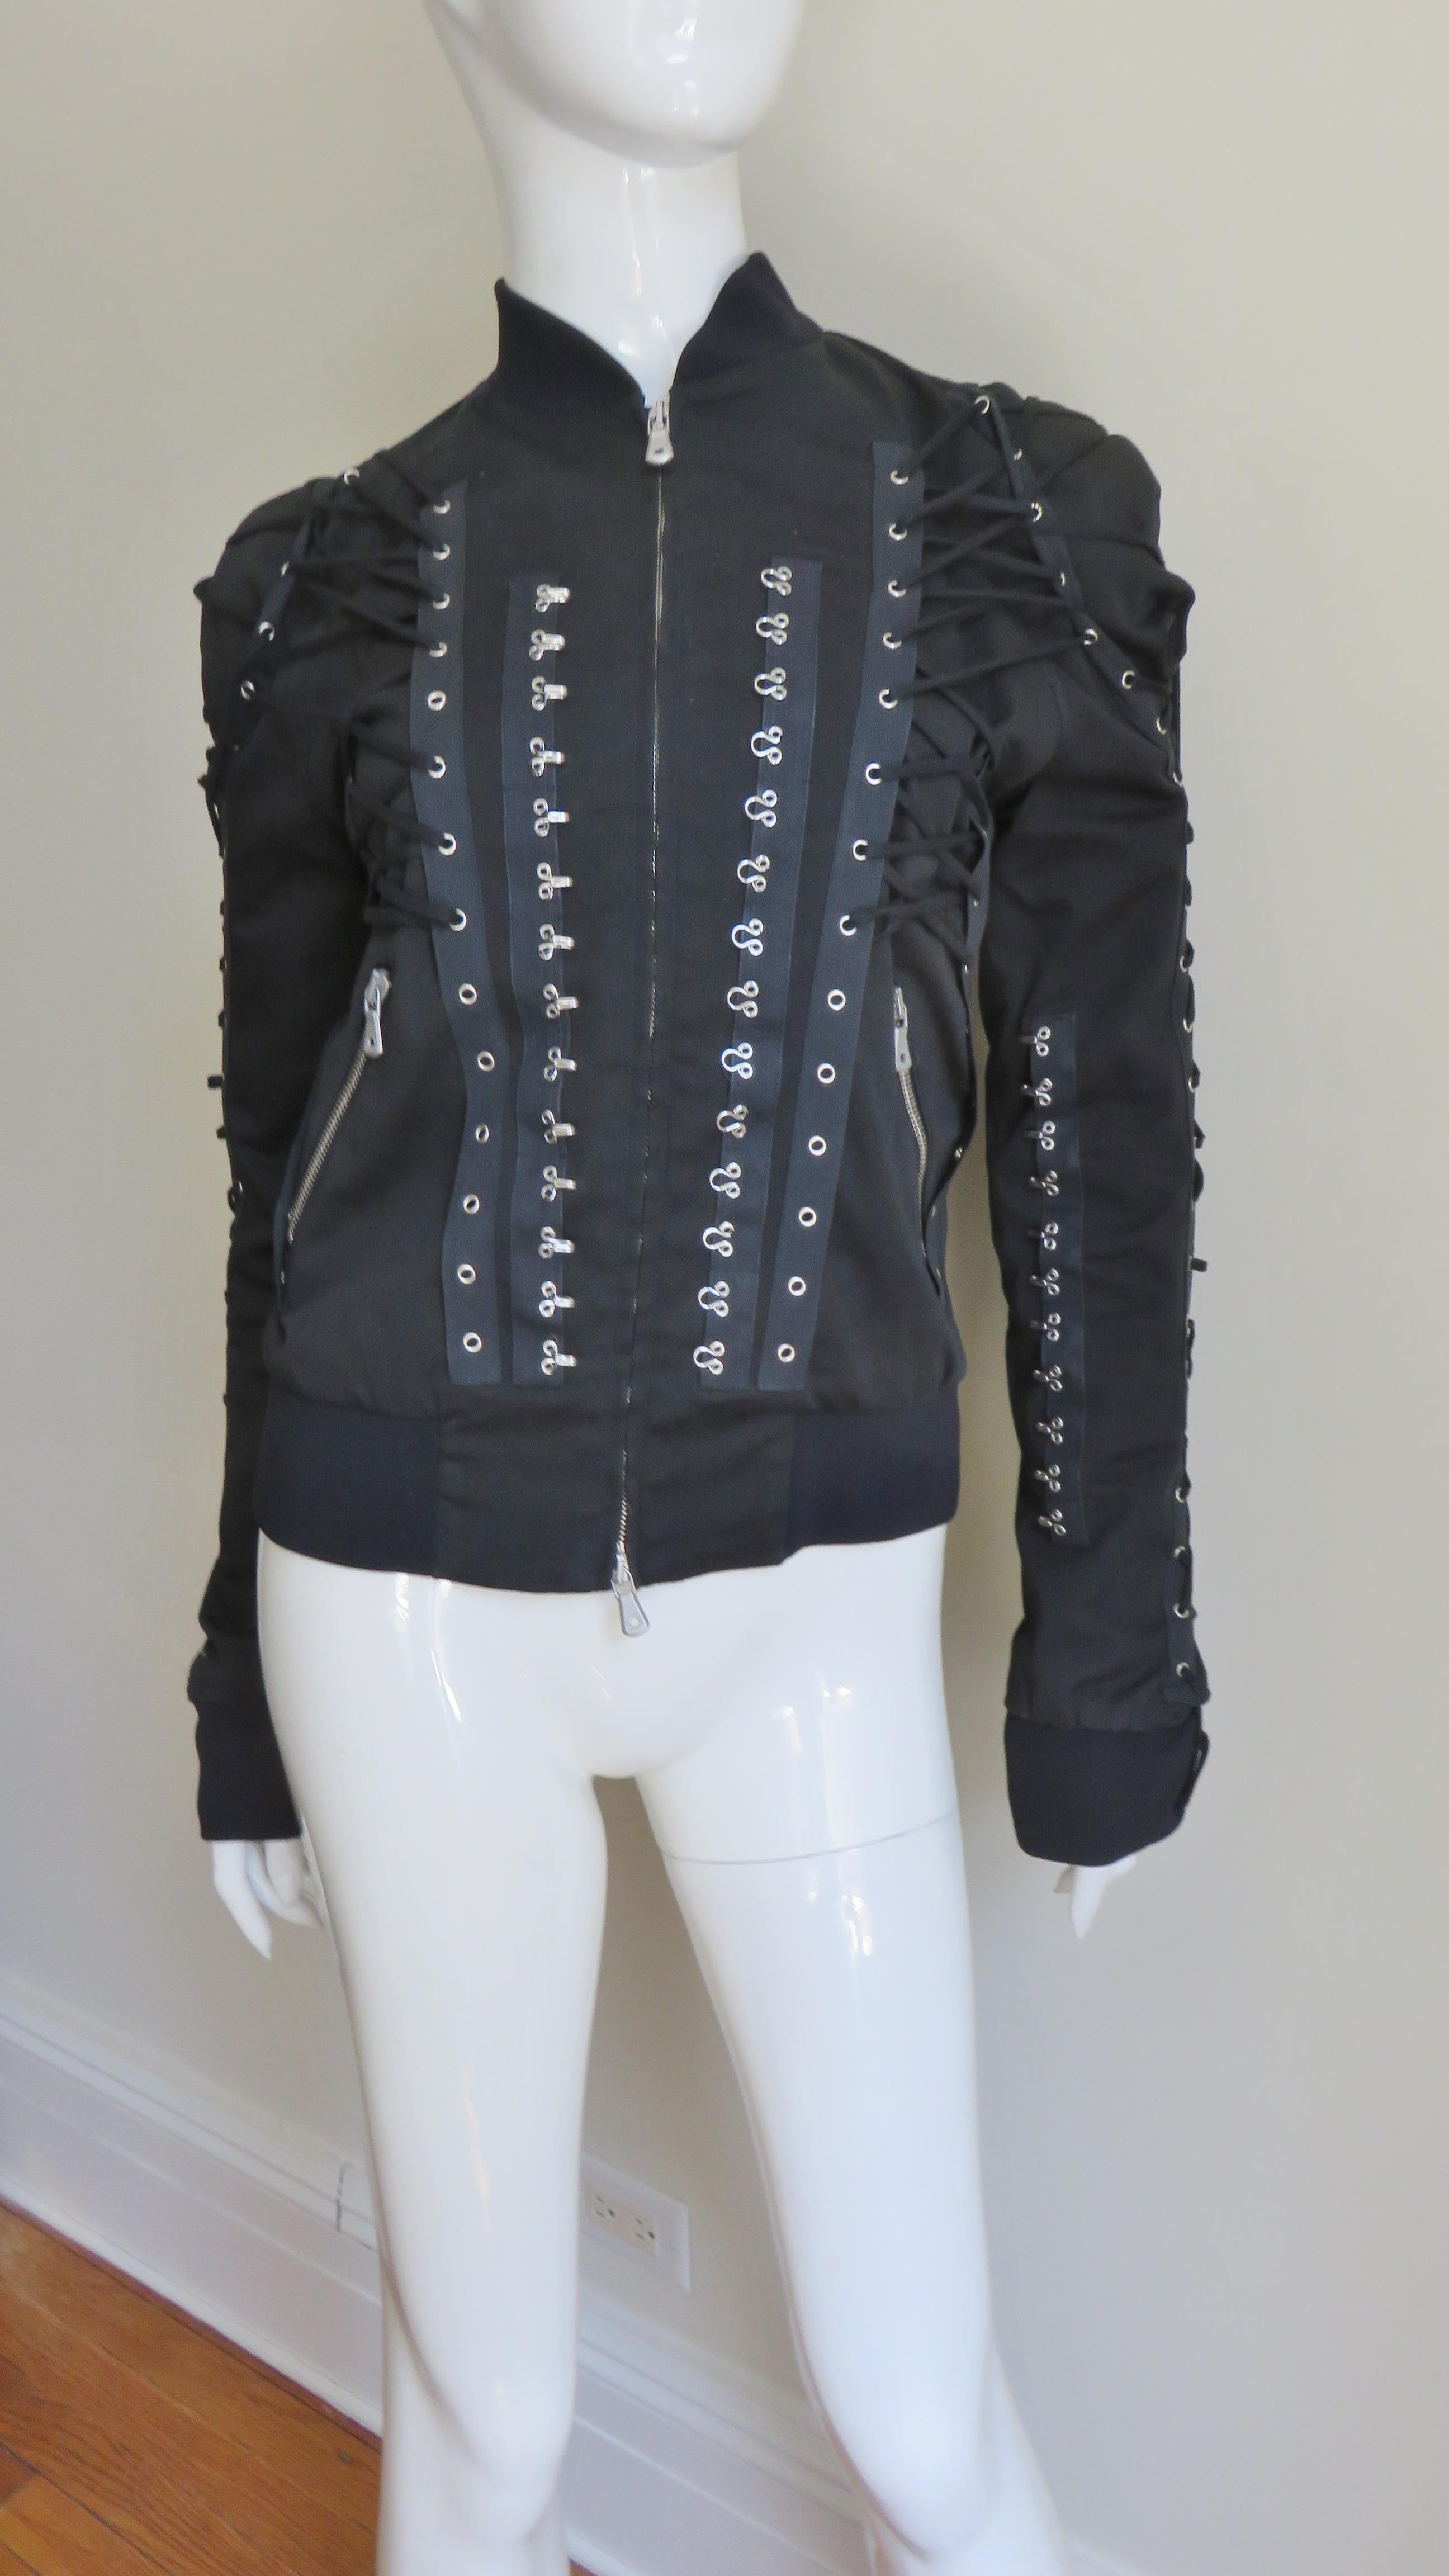 Une incroyable veste noire en coton avec un peu de stretch de Dolce & Gabbana.  Il est doté d'une fermeture à glissière argentée de séparation sur le devant avec des tirettes Dolce & Gabbana, de même que sur les poches avant angulaires.  L'encolure,